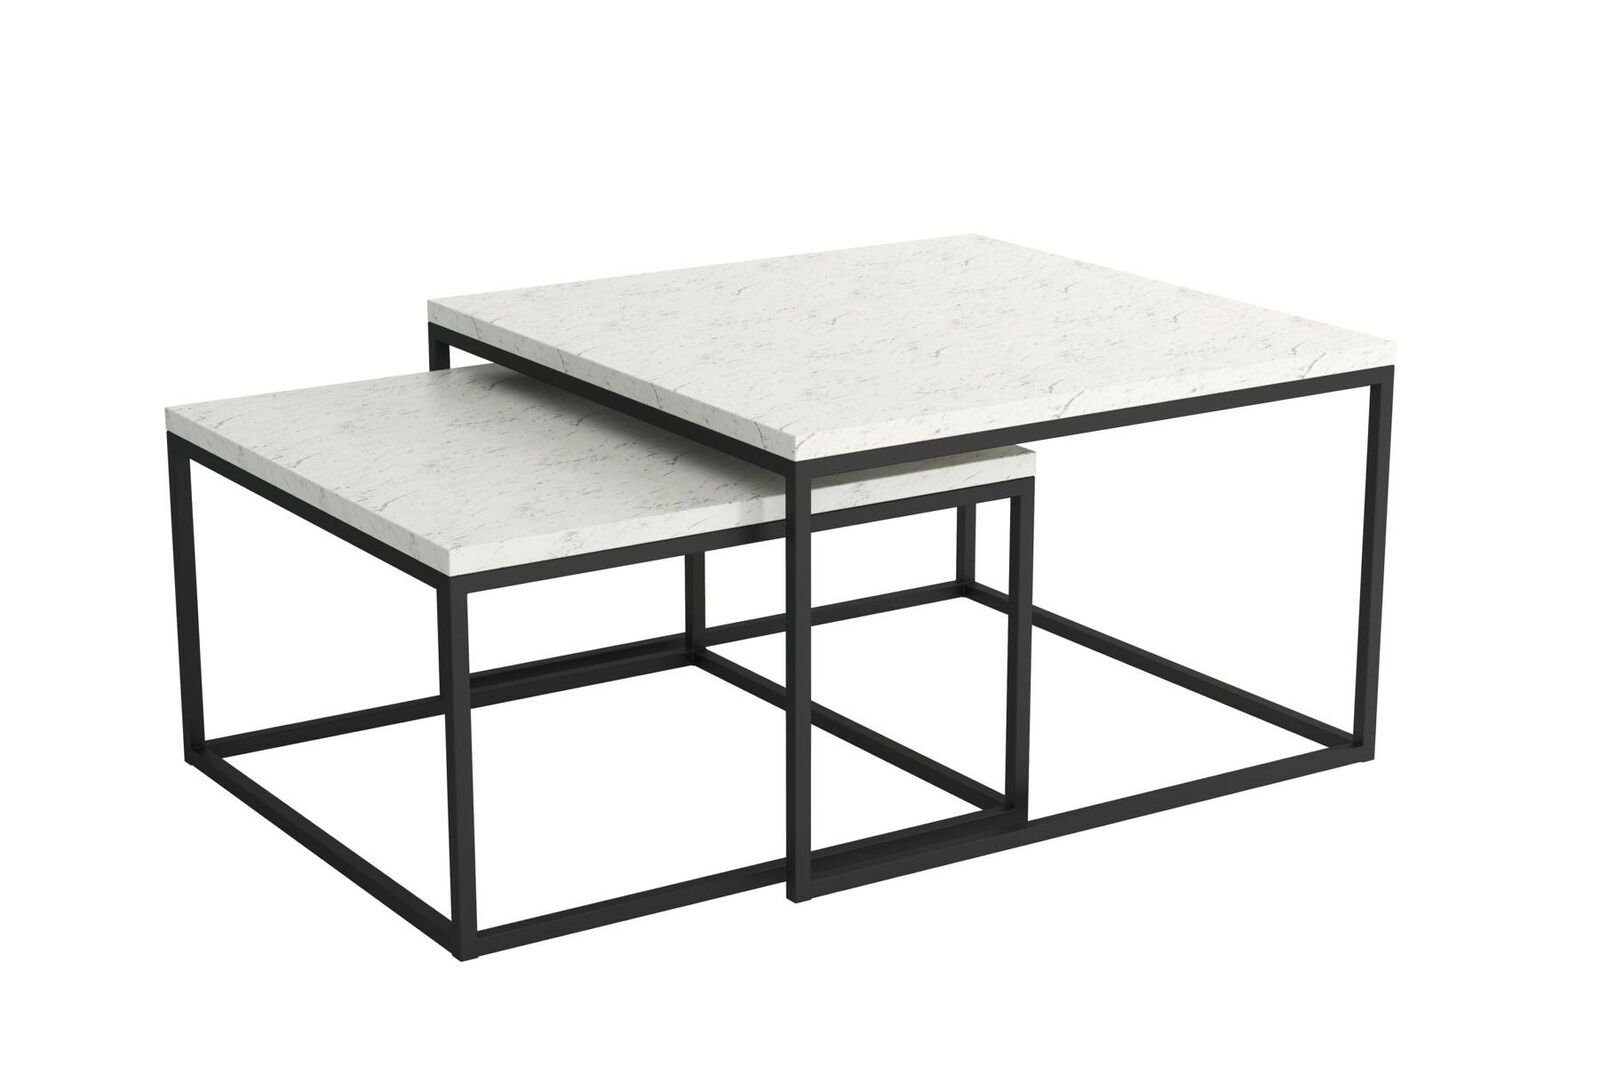 Tische 2x 2x Tisch Wohnzimmertisch Designer Tische Couchtisch Beistelltisch Beistelltisch Tisch Designer Wohnzimmertisch Couchtisch Couchtisch, JVmoebel